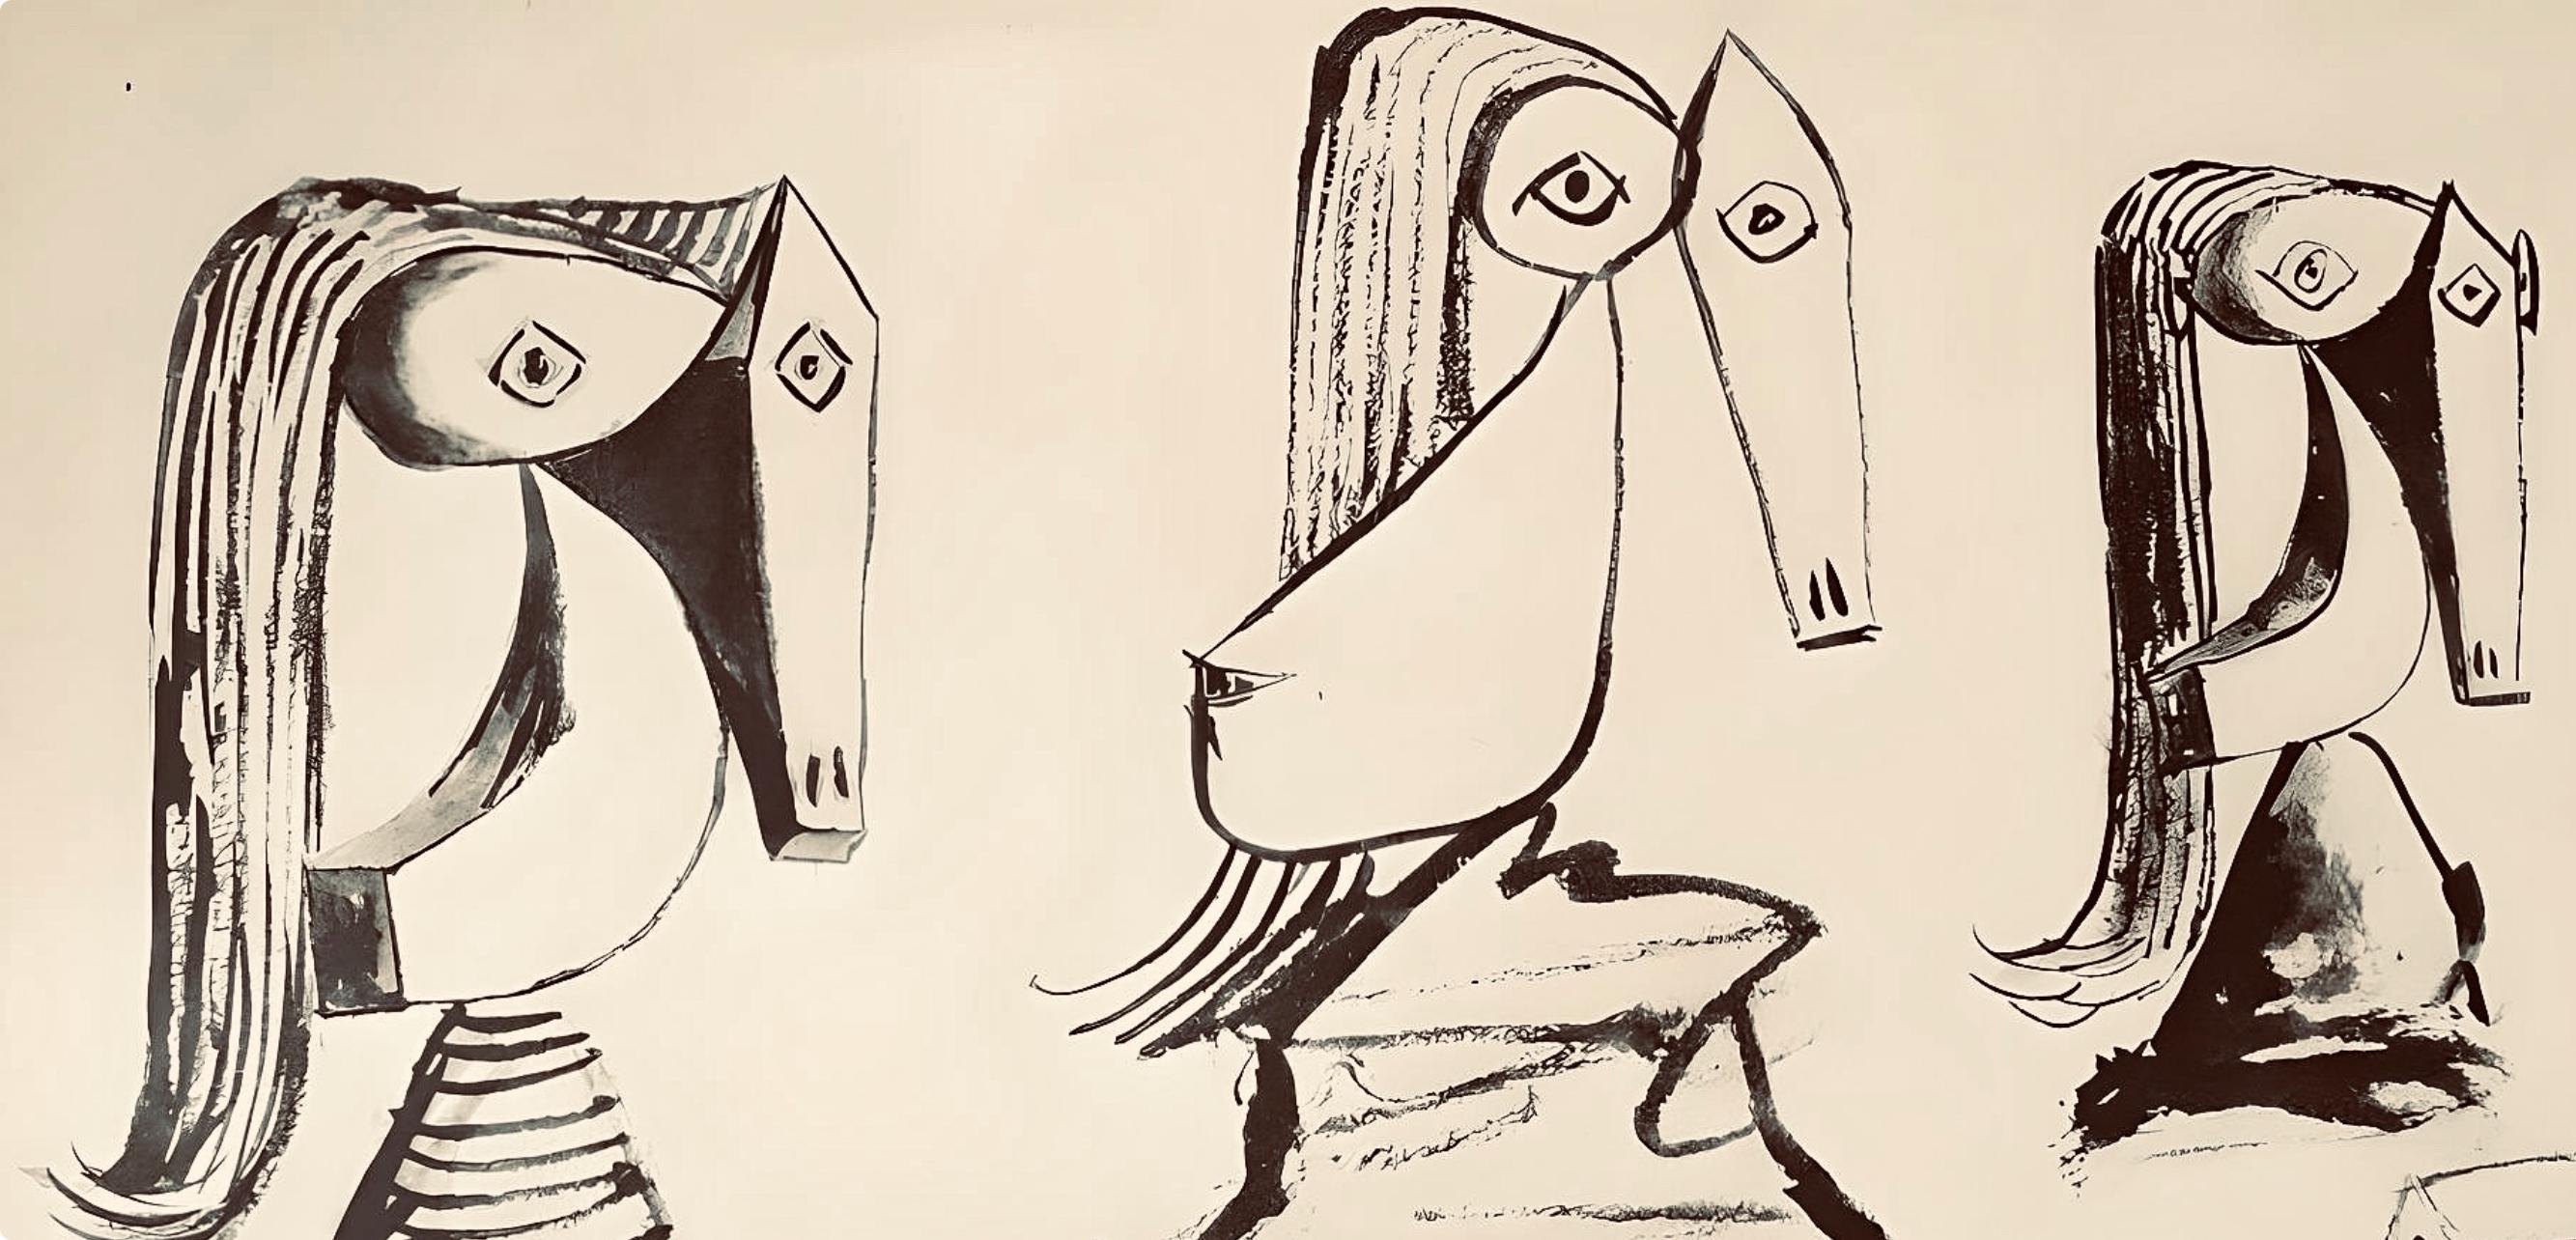 Picasso, Composition, Carnet de dessins de Picasso, Cahiers d’Art (after) - Print by Pablo Picasso